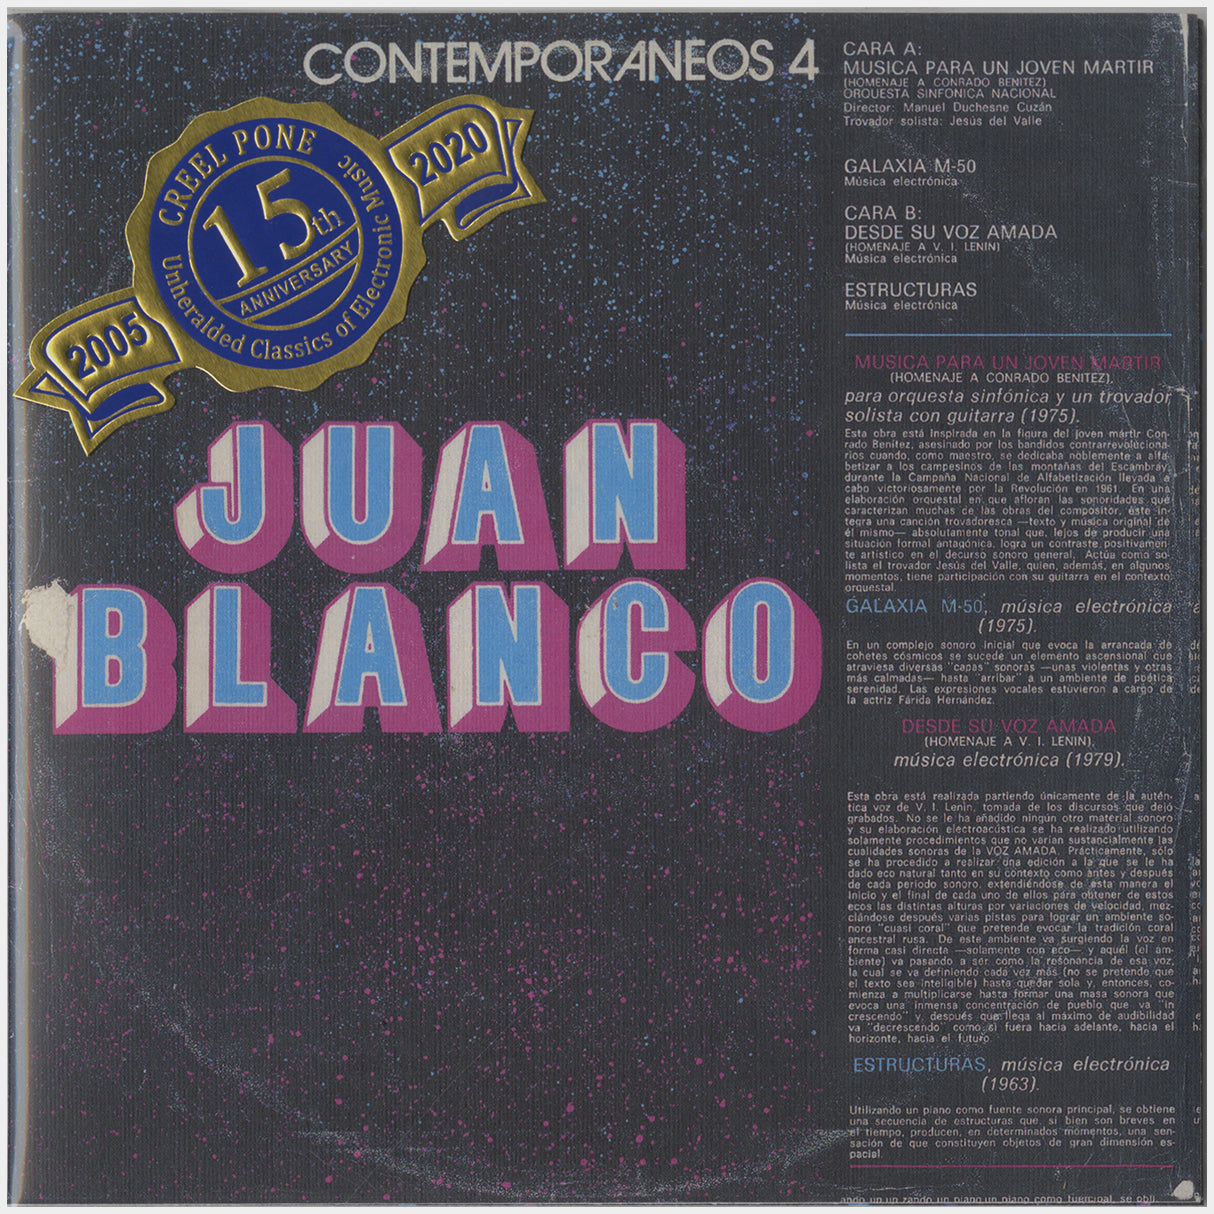 [CP 120-120.5 CD] Juan Blanco; El Guije, Suite Erotica, Suite De Los Niños, Contemporaneos 4, Musica Electroacustica